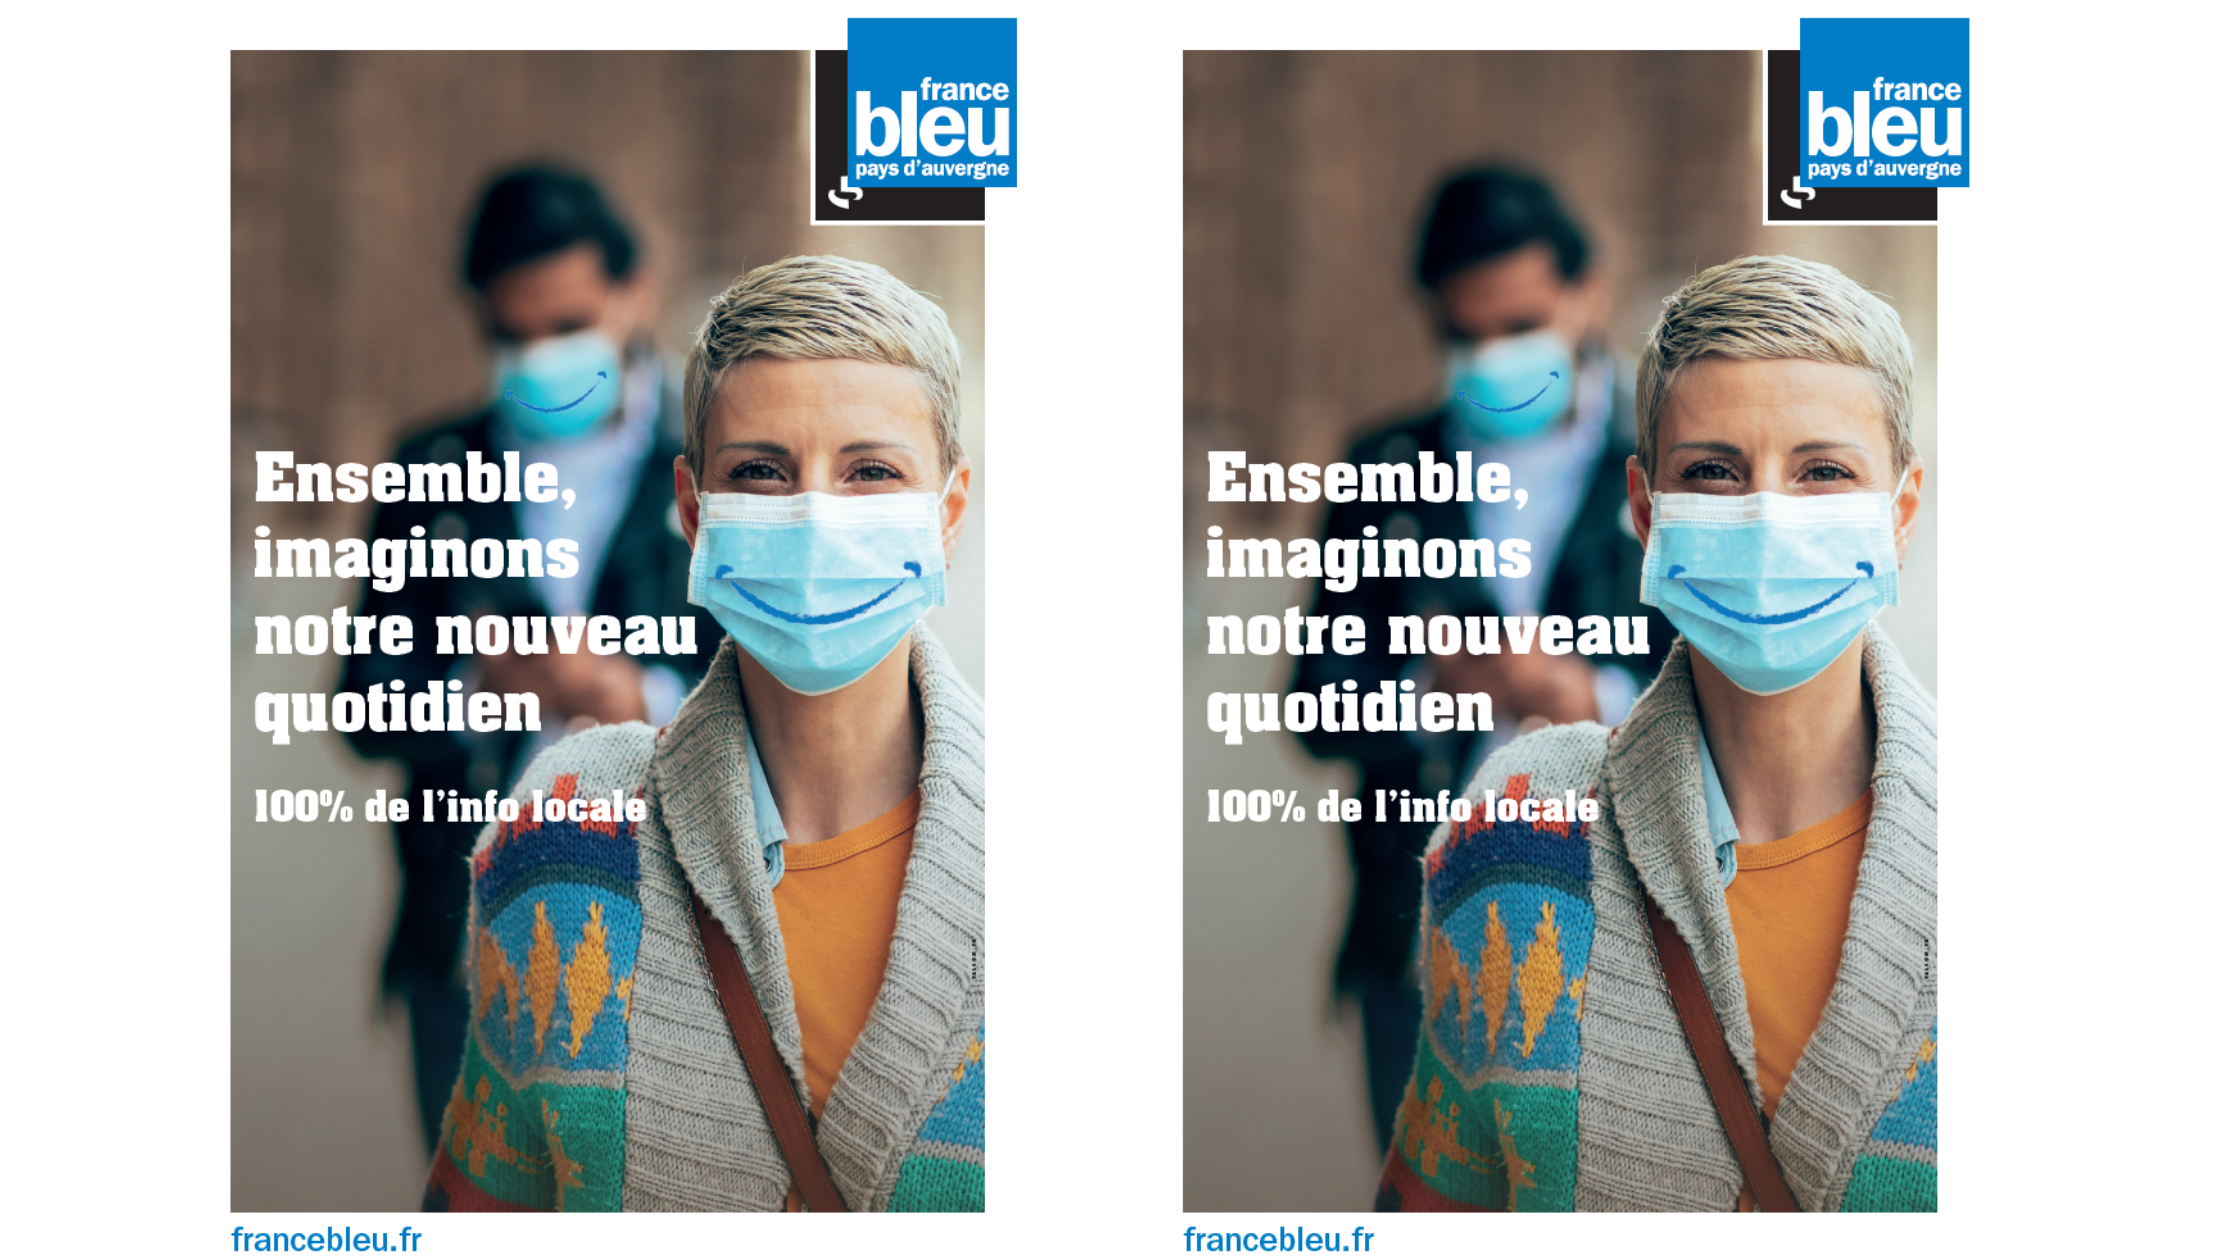 France Bleu imagine l'après crise dans une campagne de communication